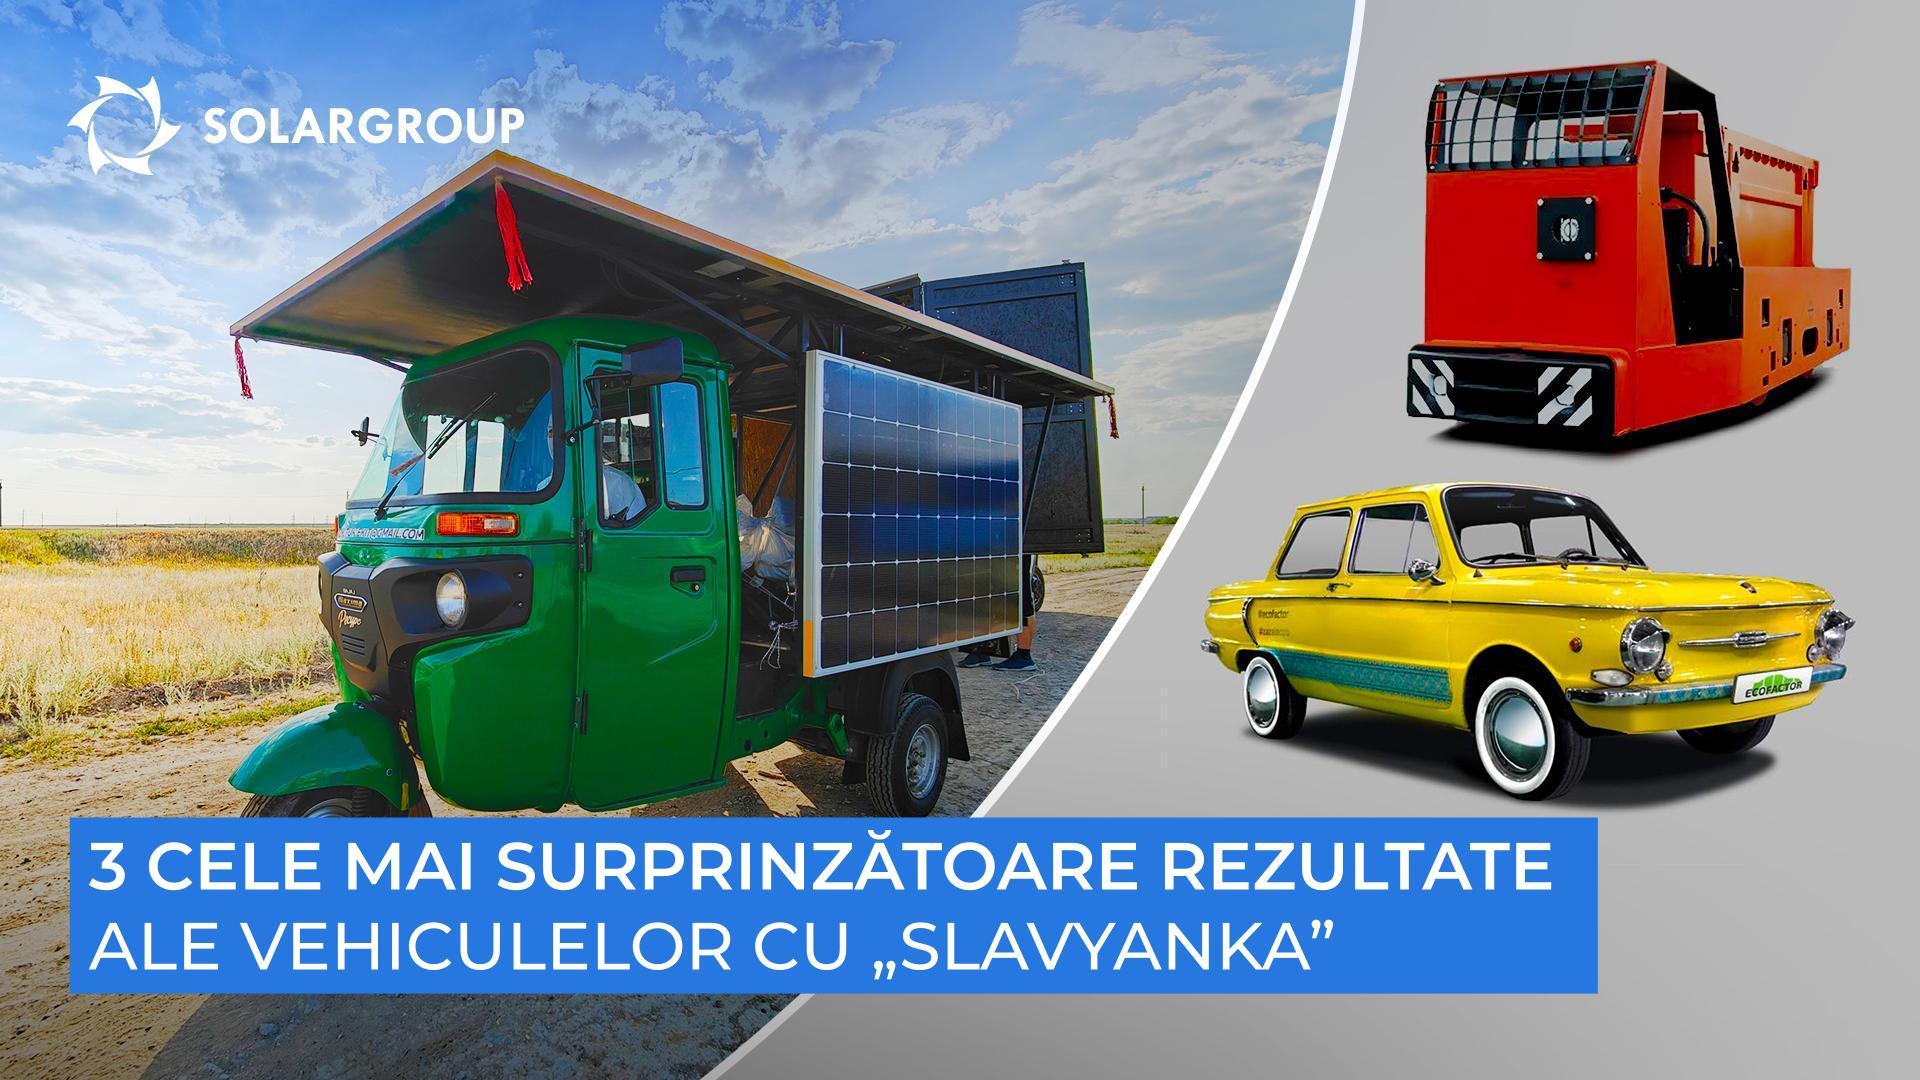 Vehiculele cu „Slavyanka” care ne-au surprins în practică